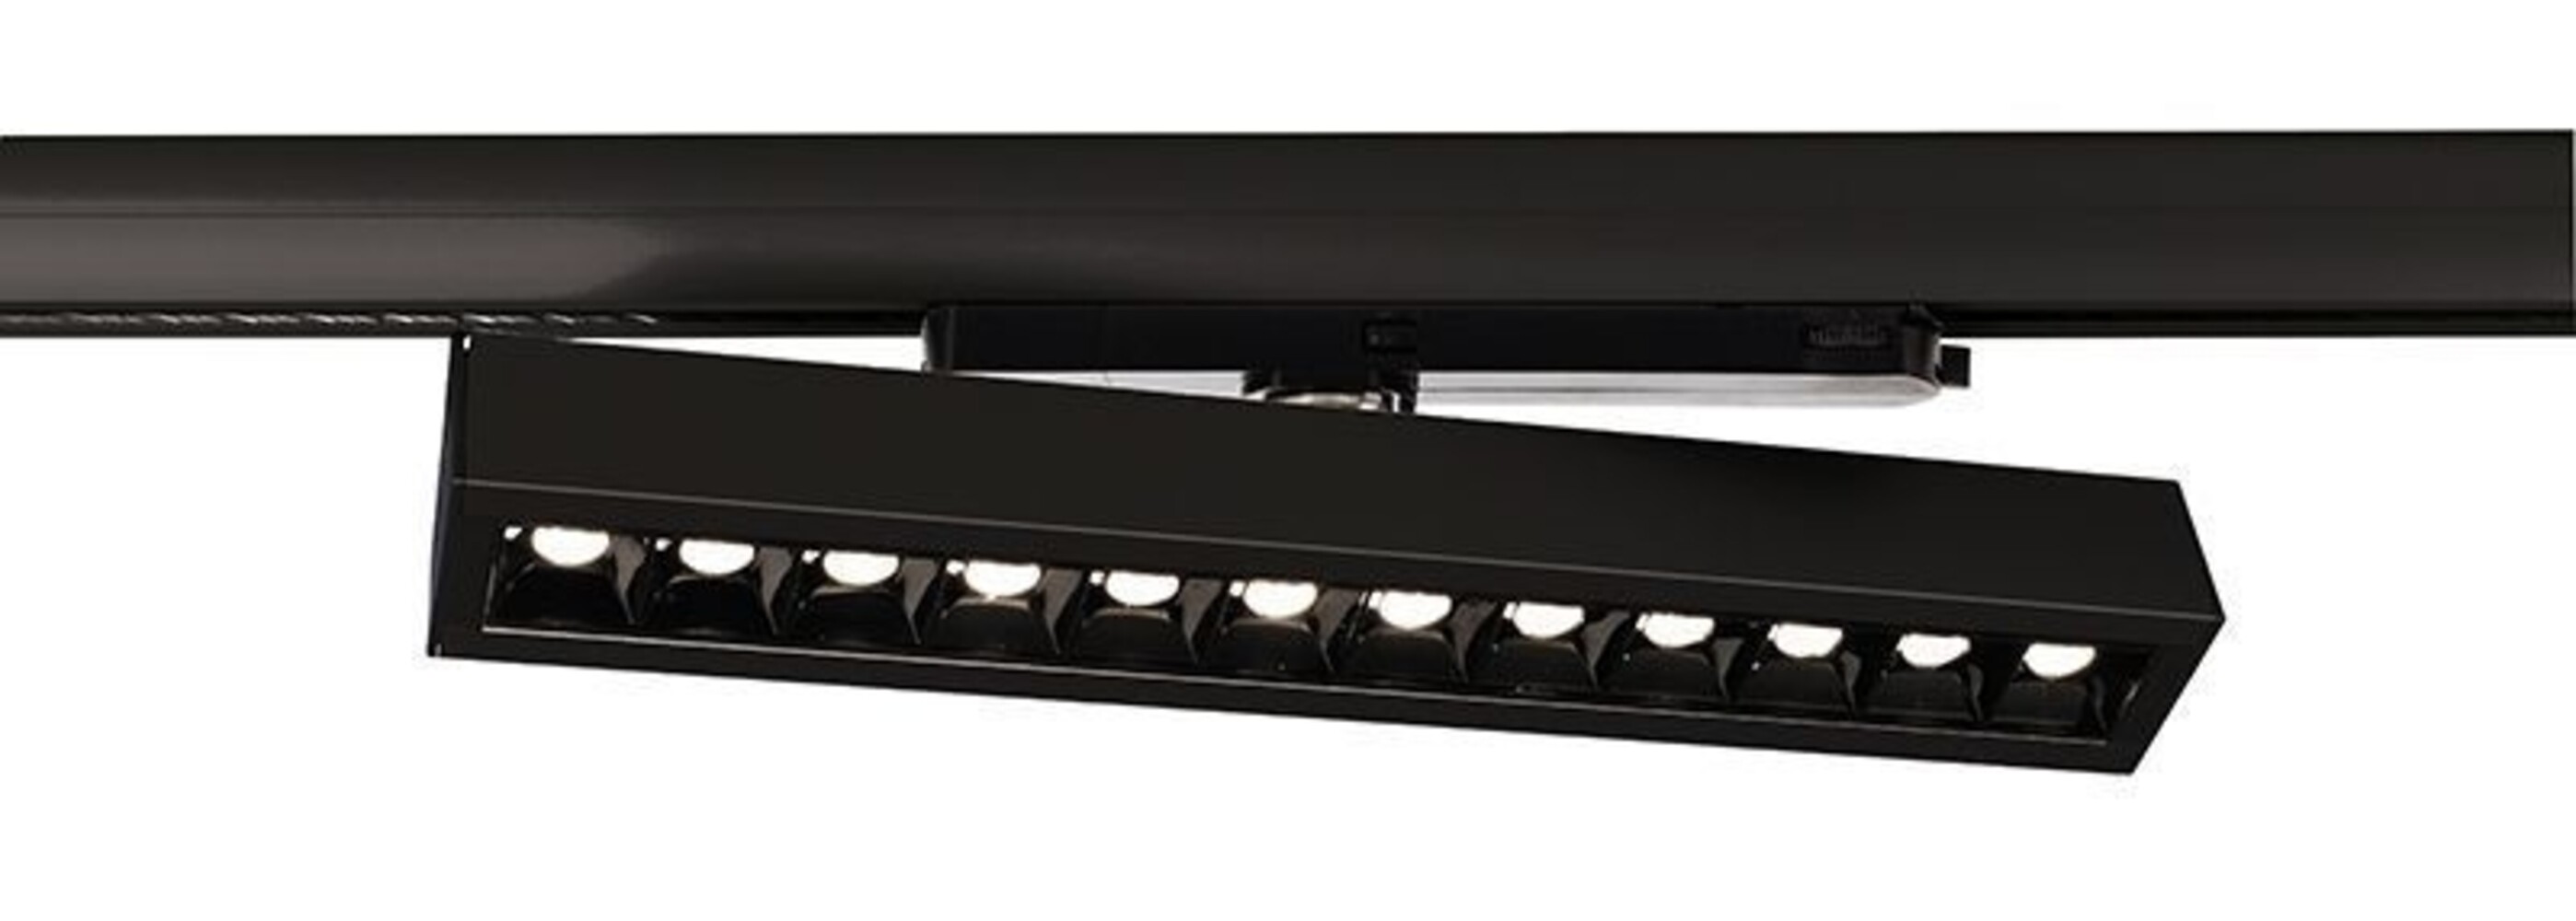 Modernes und elegantes Schienensystem der Marke Deko-Light mit einer Leistung von 30W und einer Farbtemperatur von 3000K